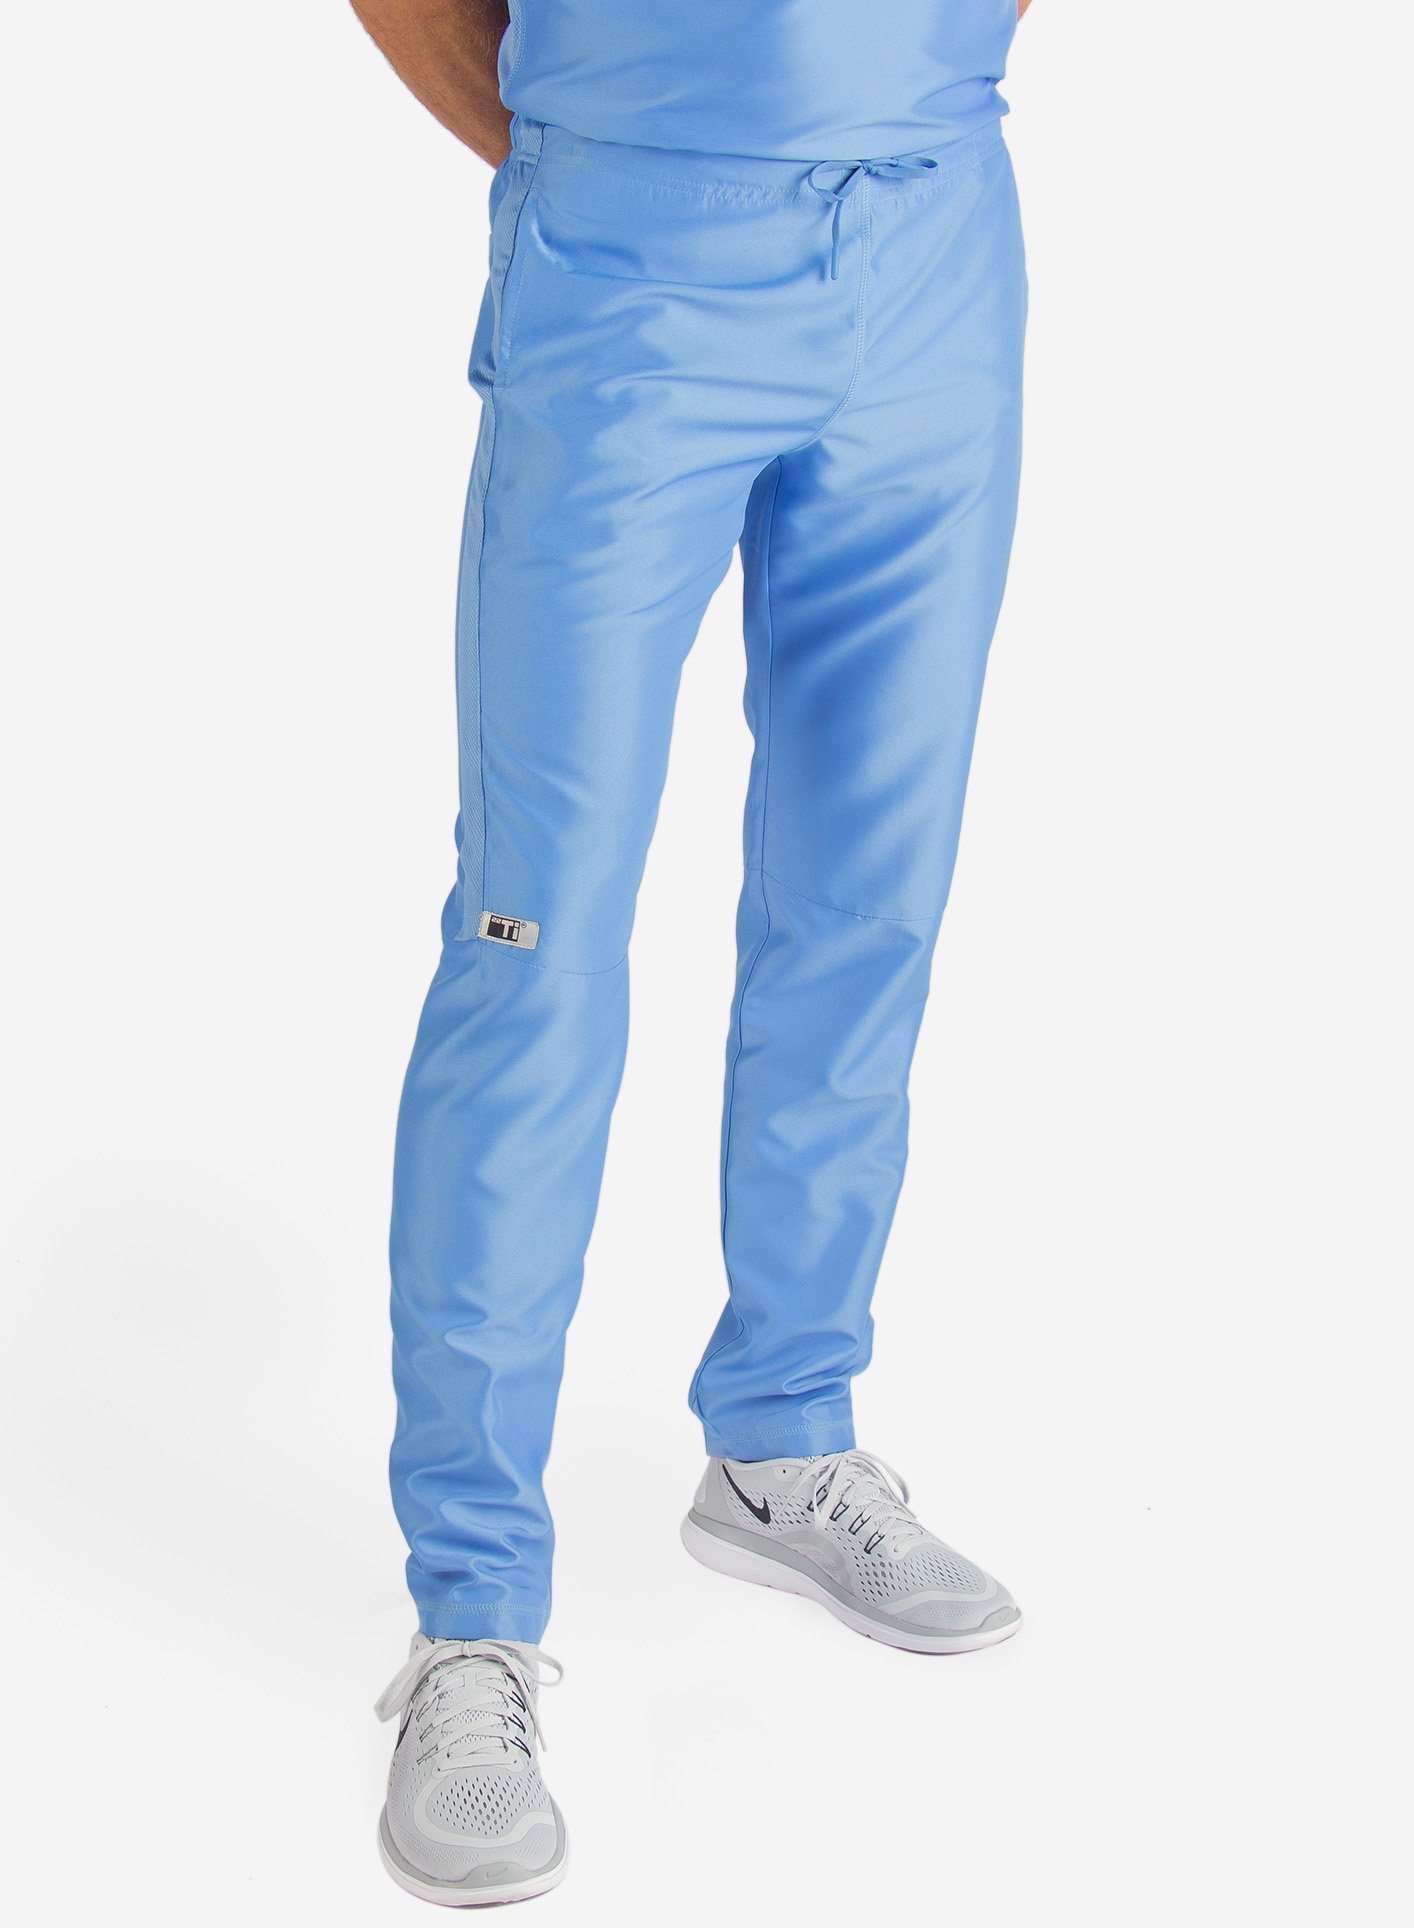 Men's Slim Fit Scrub Pants in  ceil-blue